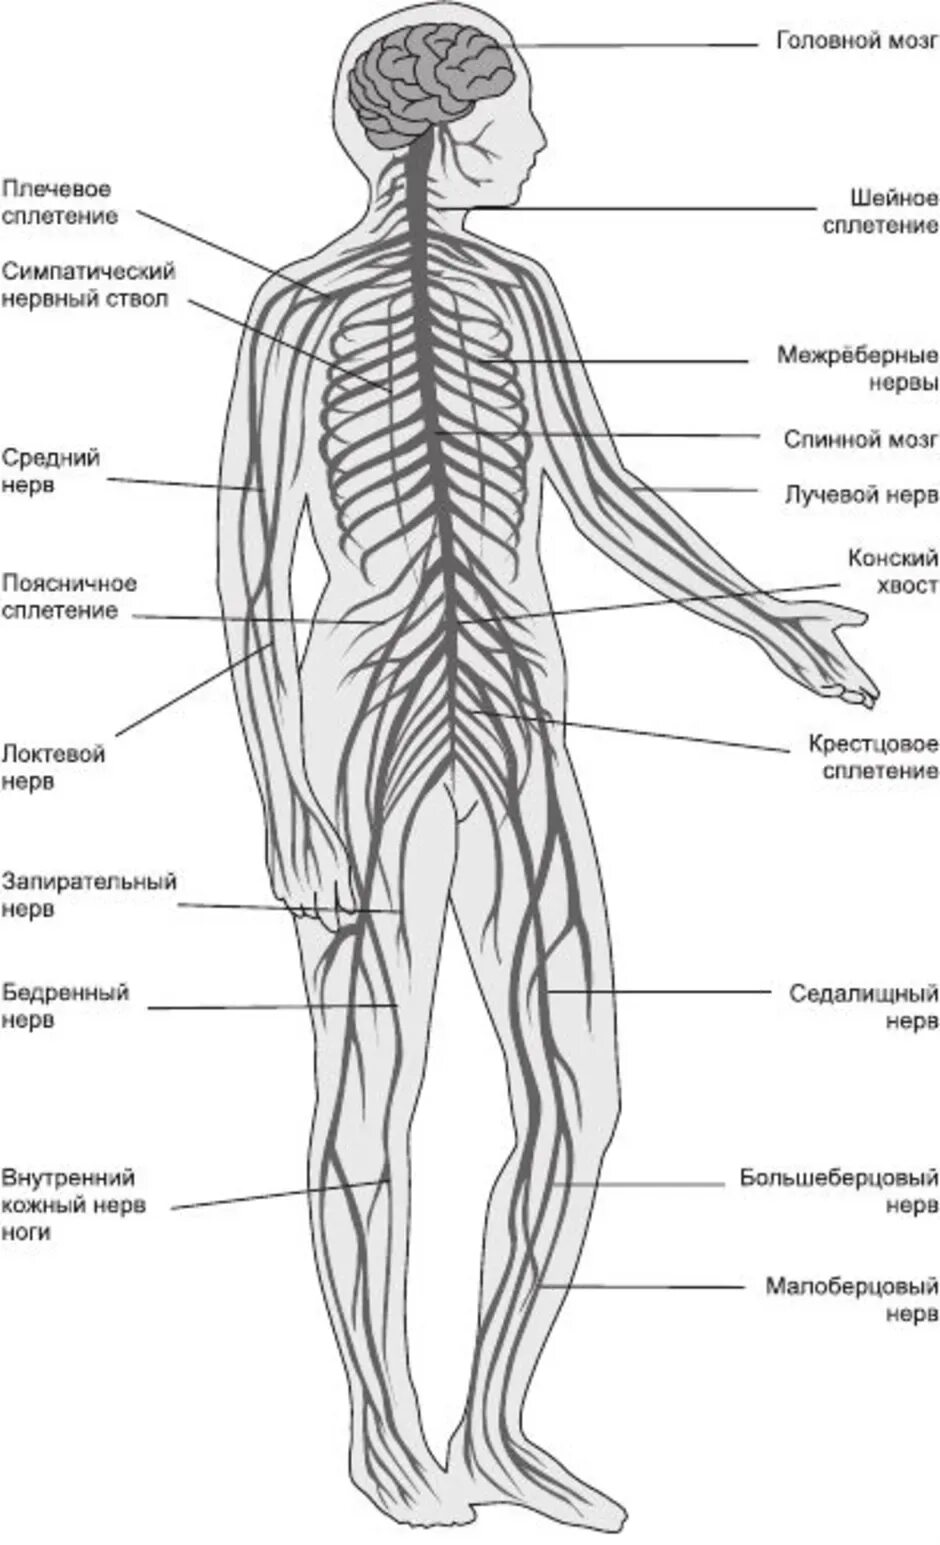 Схема нервов